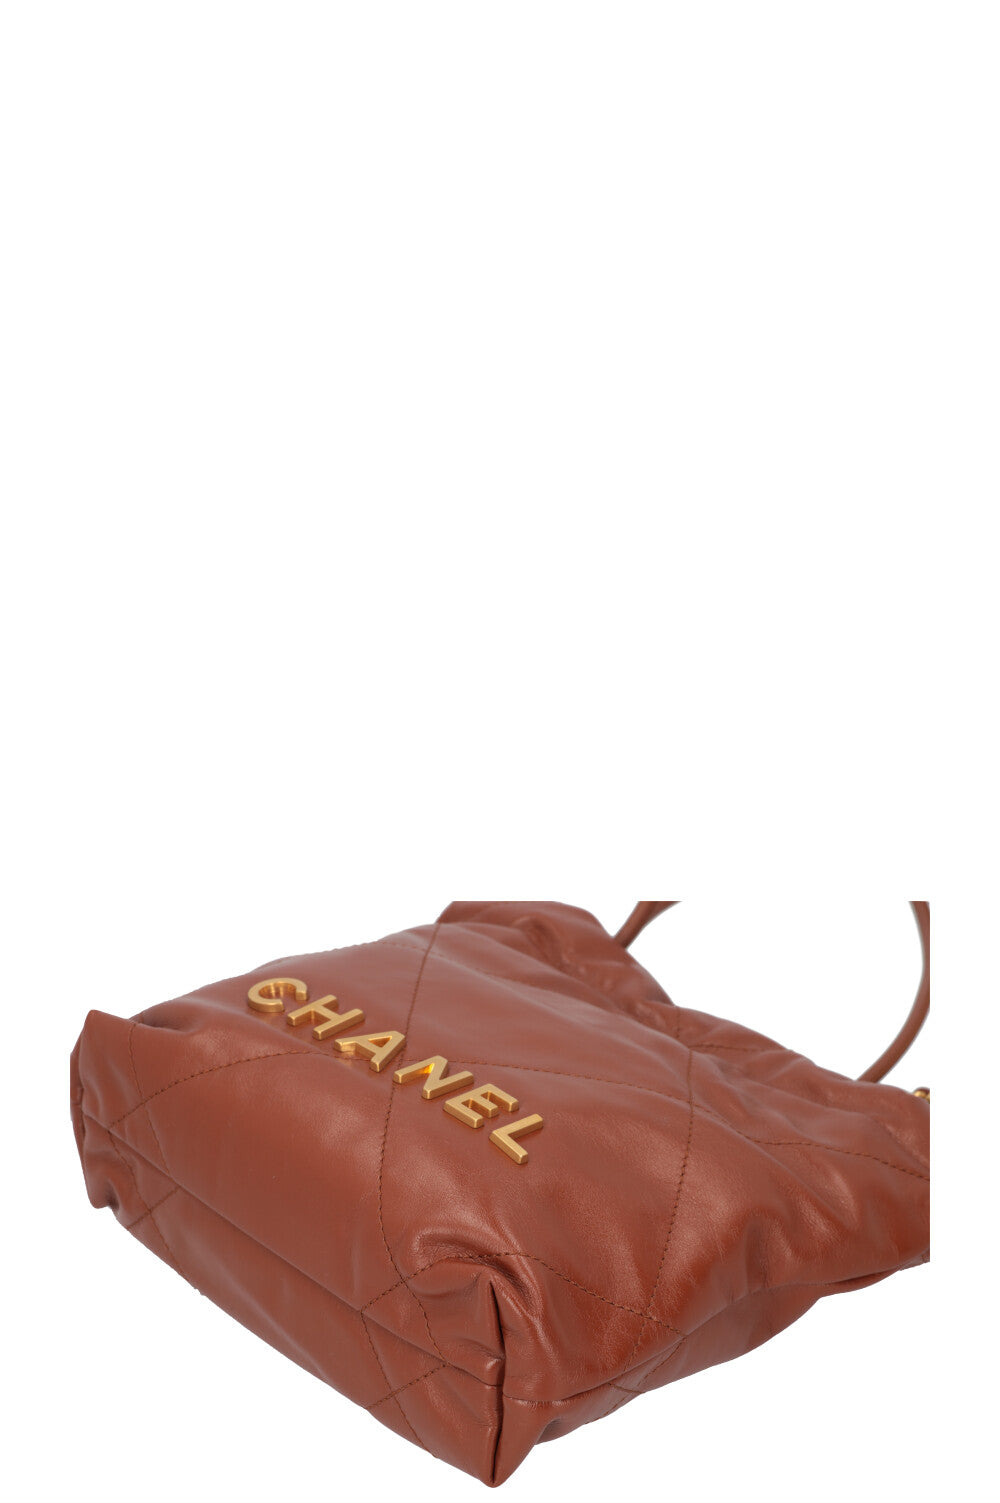 CHANEL 22 Bag Mini Brown